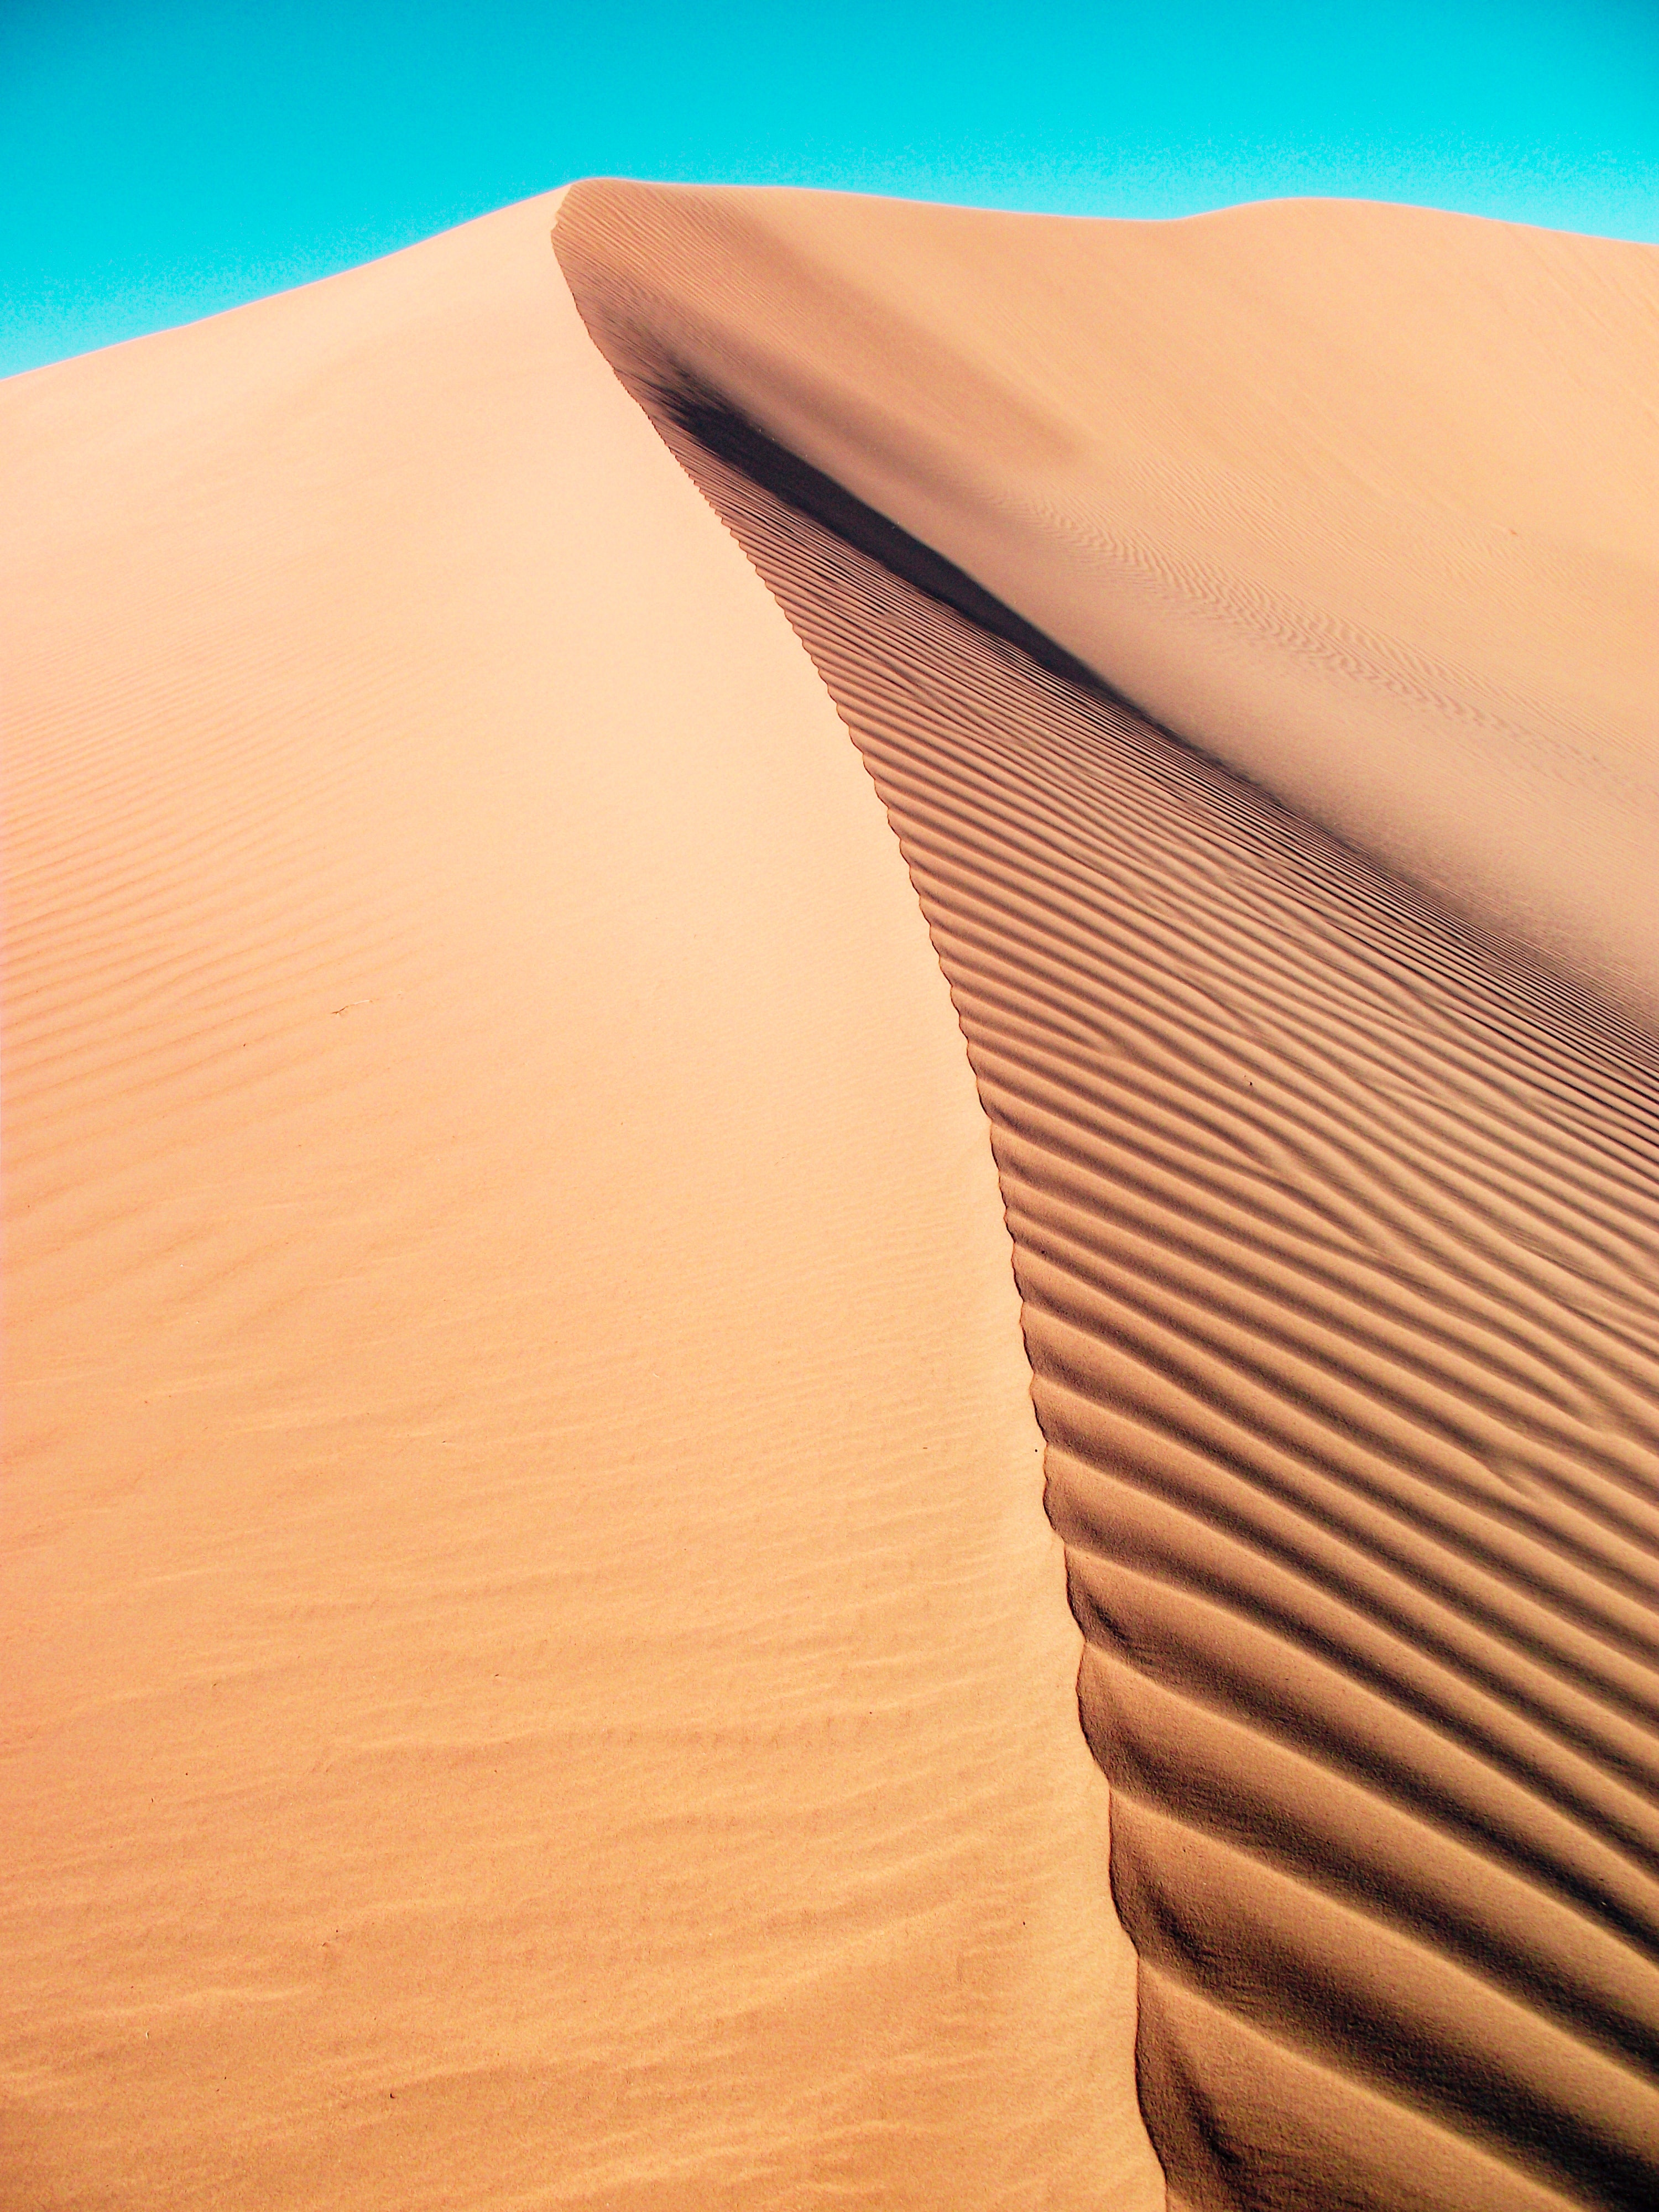 Desert 4K Sand Wallpapers